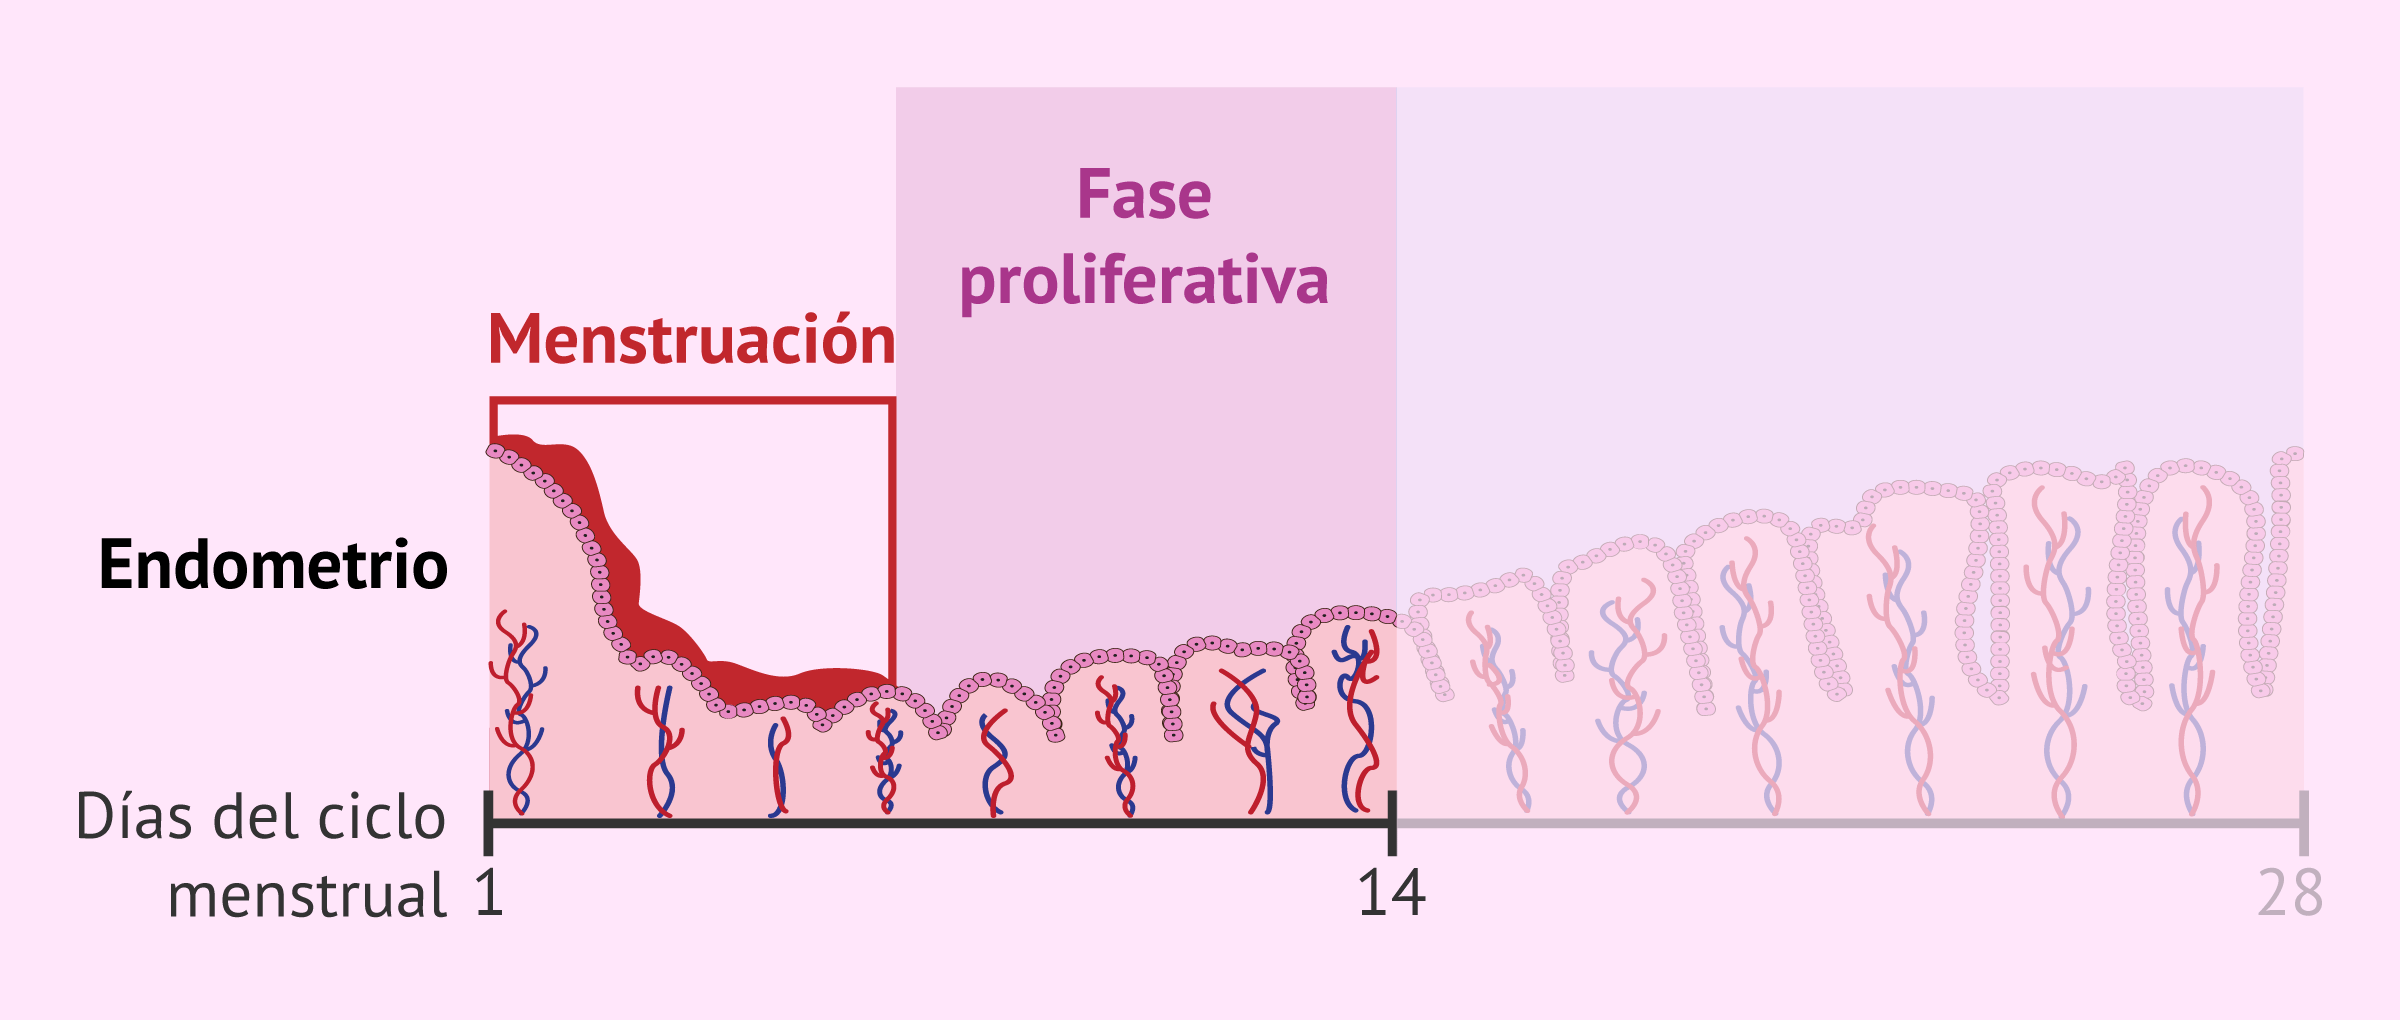 Fase proliferativa en el endometrio uterino